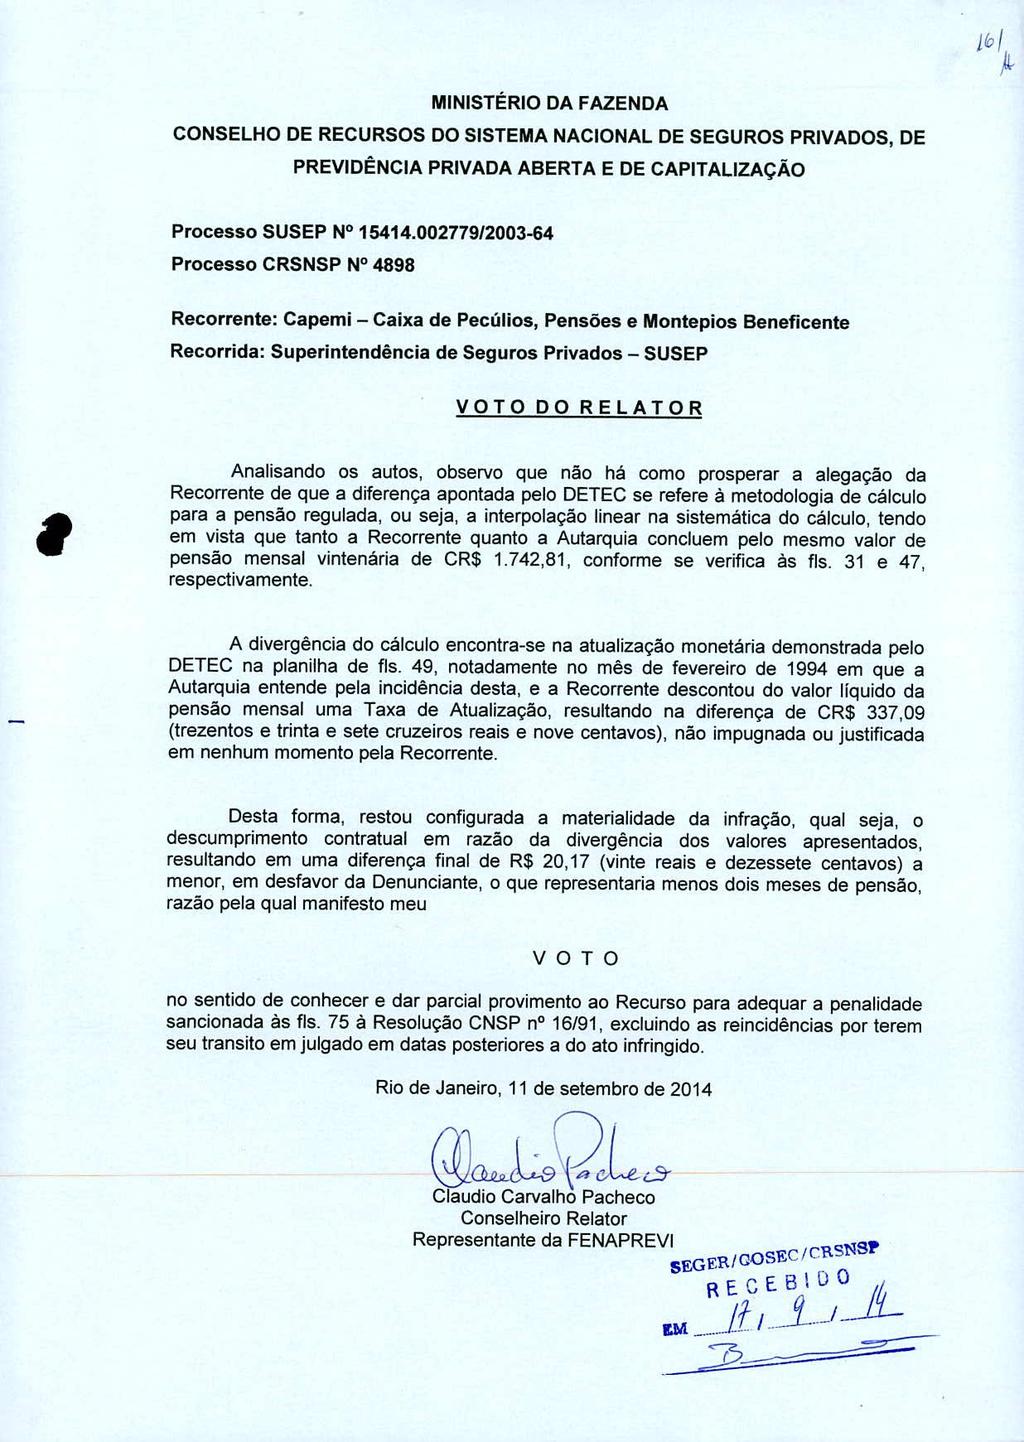 MINISTÉRIO DA FAZENDA CONSELHO DE RECURSOS DO SISTEMA NACIONAL DE SEGUROS PRIVADOS, DE PREVIDÊNCIA PRIVADA ABERTA E DE CAPITALIZAÇÃO Processo SUSEP N 15414.